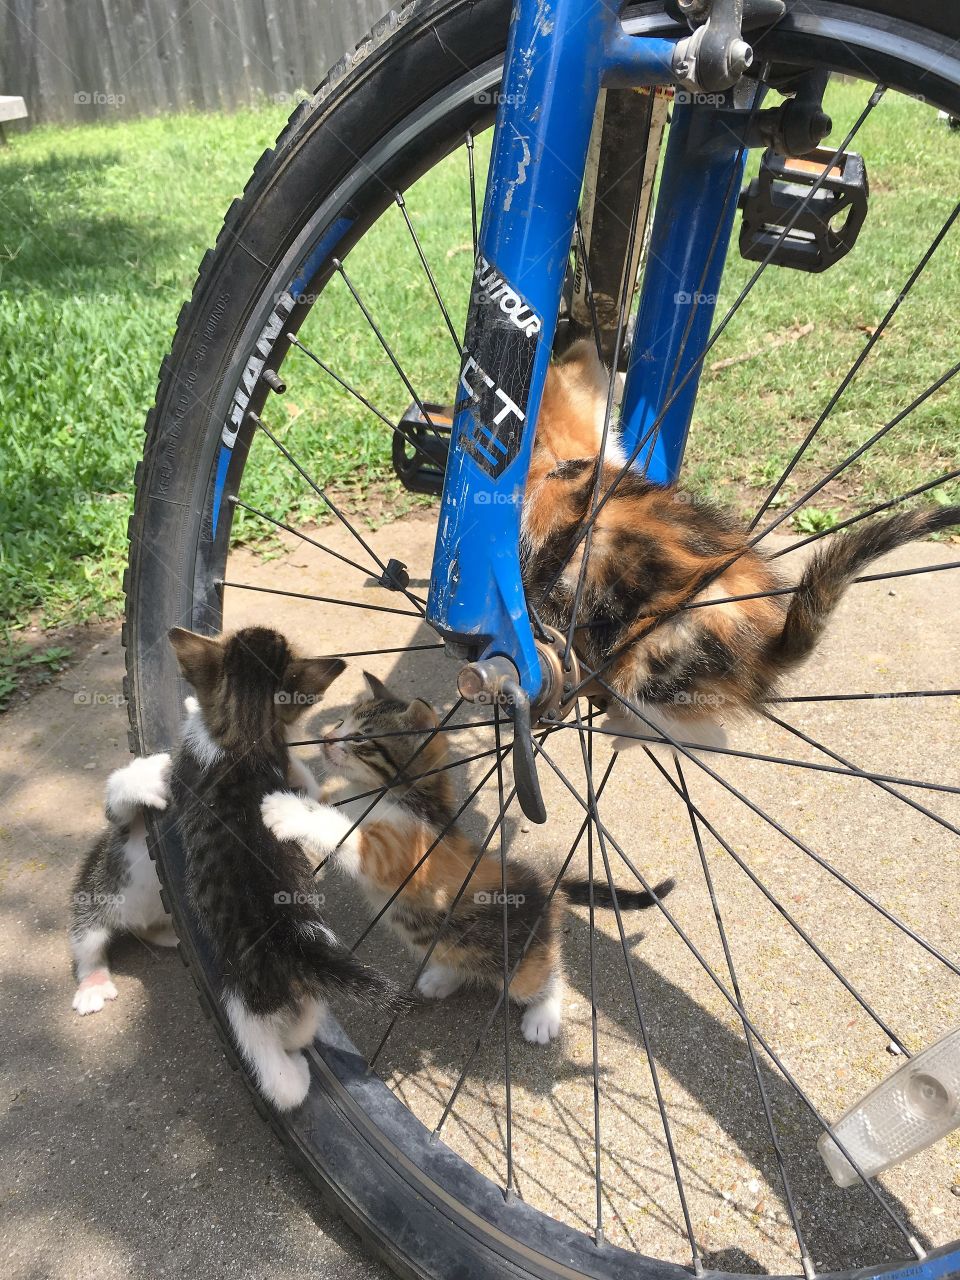 Kittens on a bike 